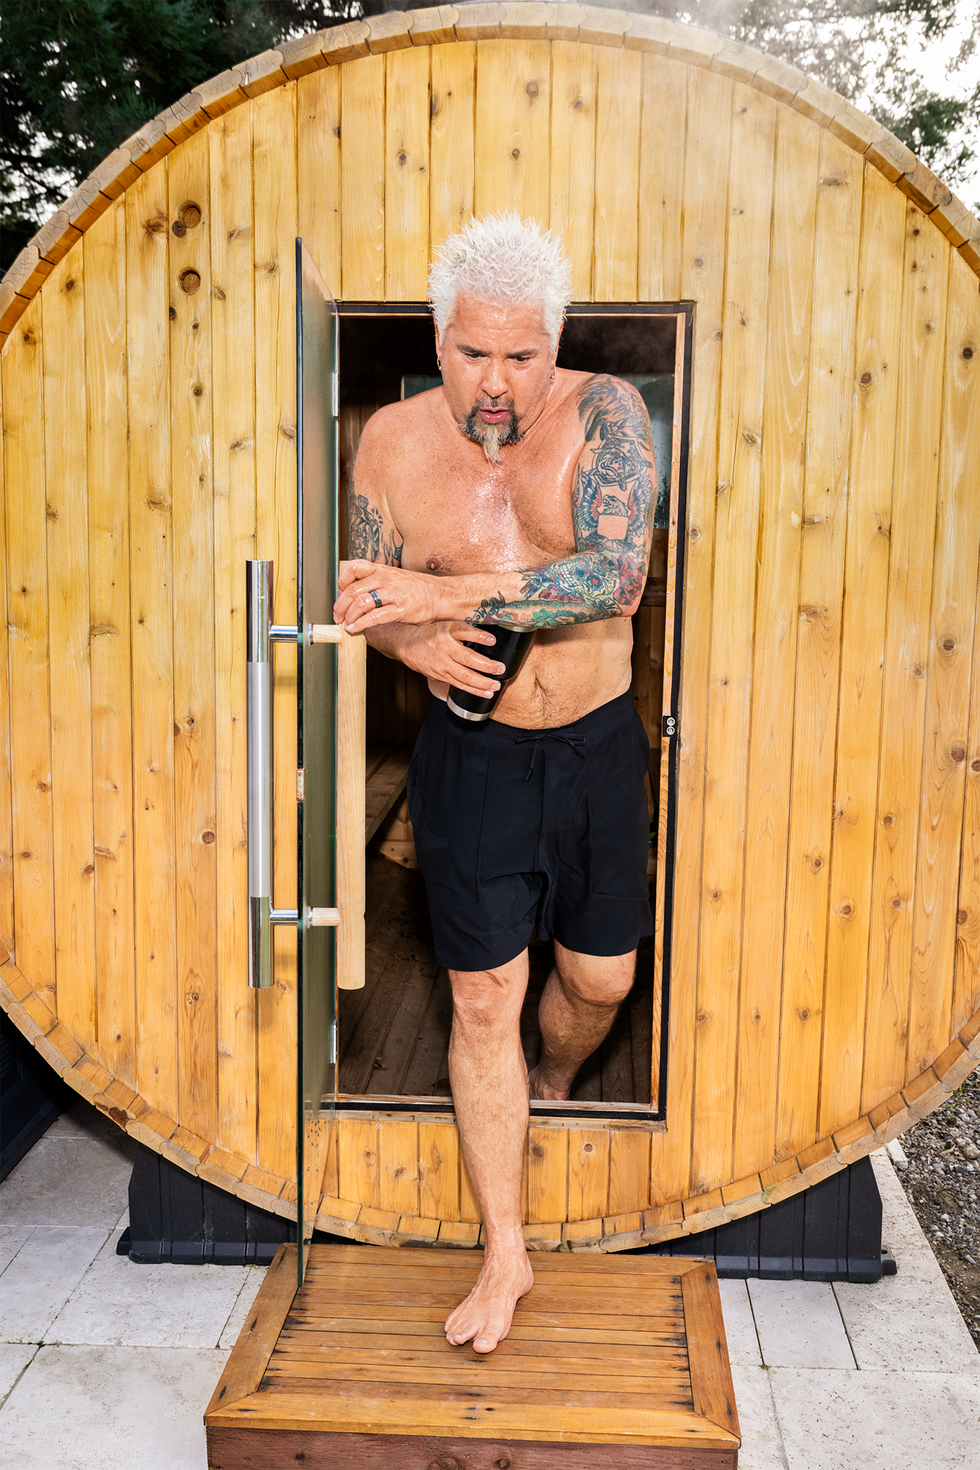 guy fieri exitng his sauna